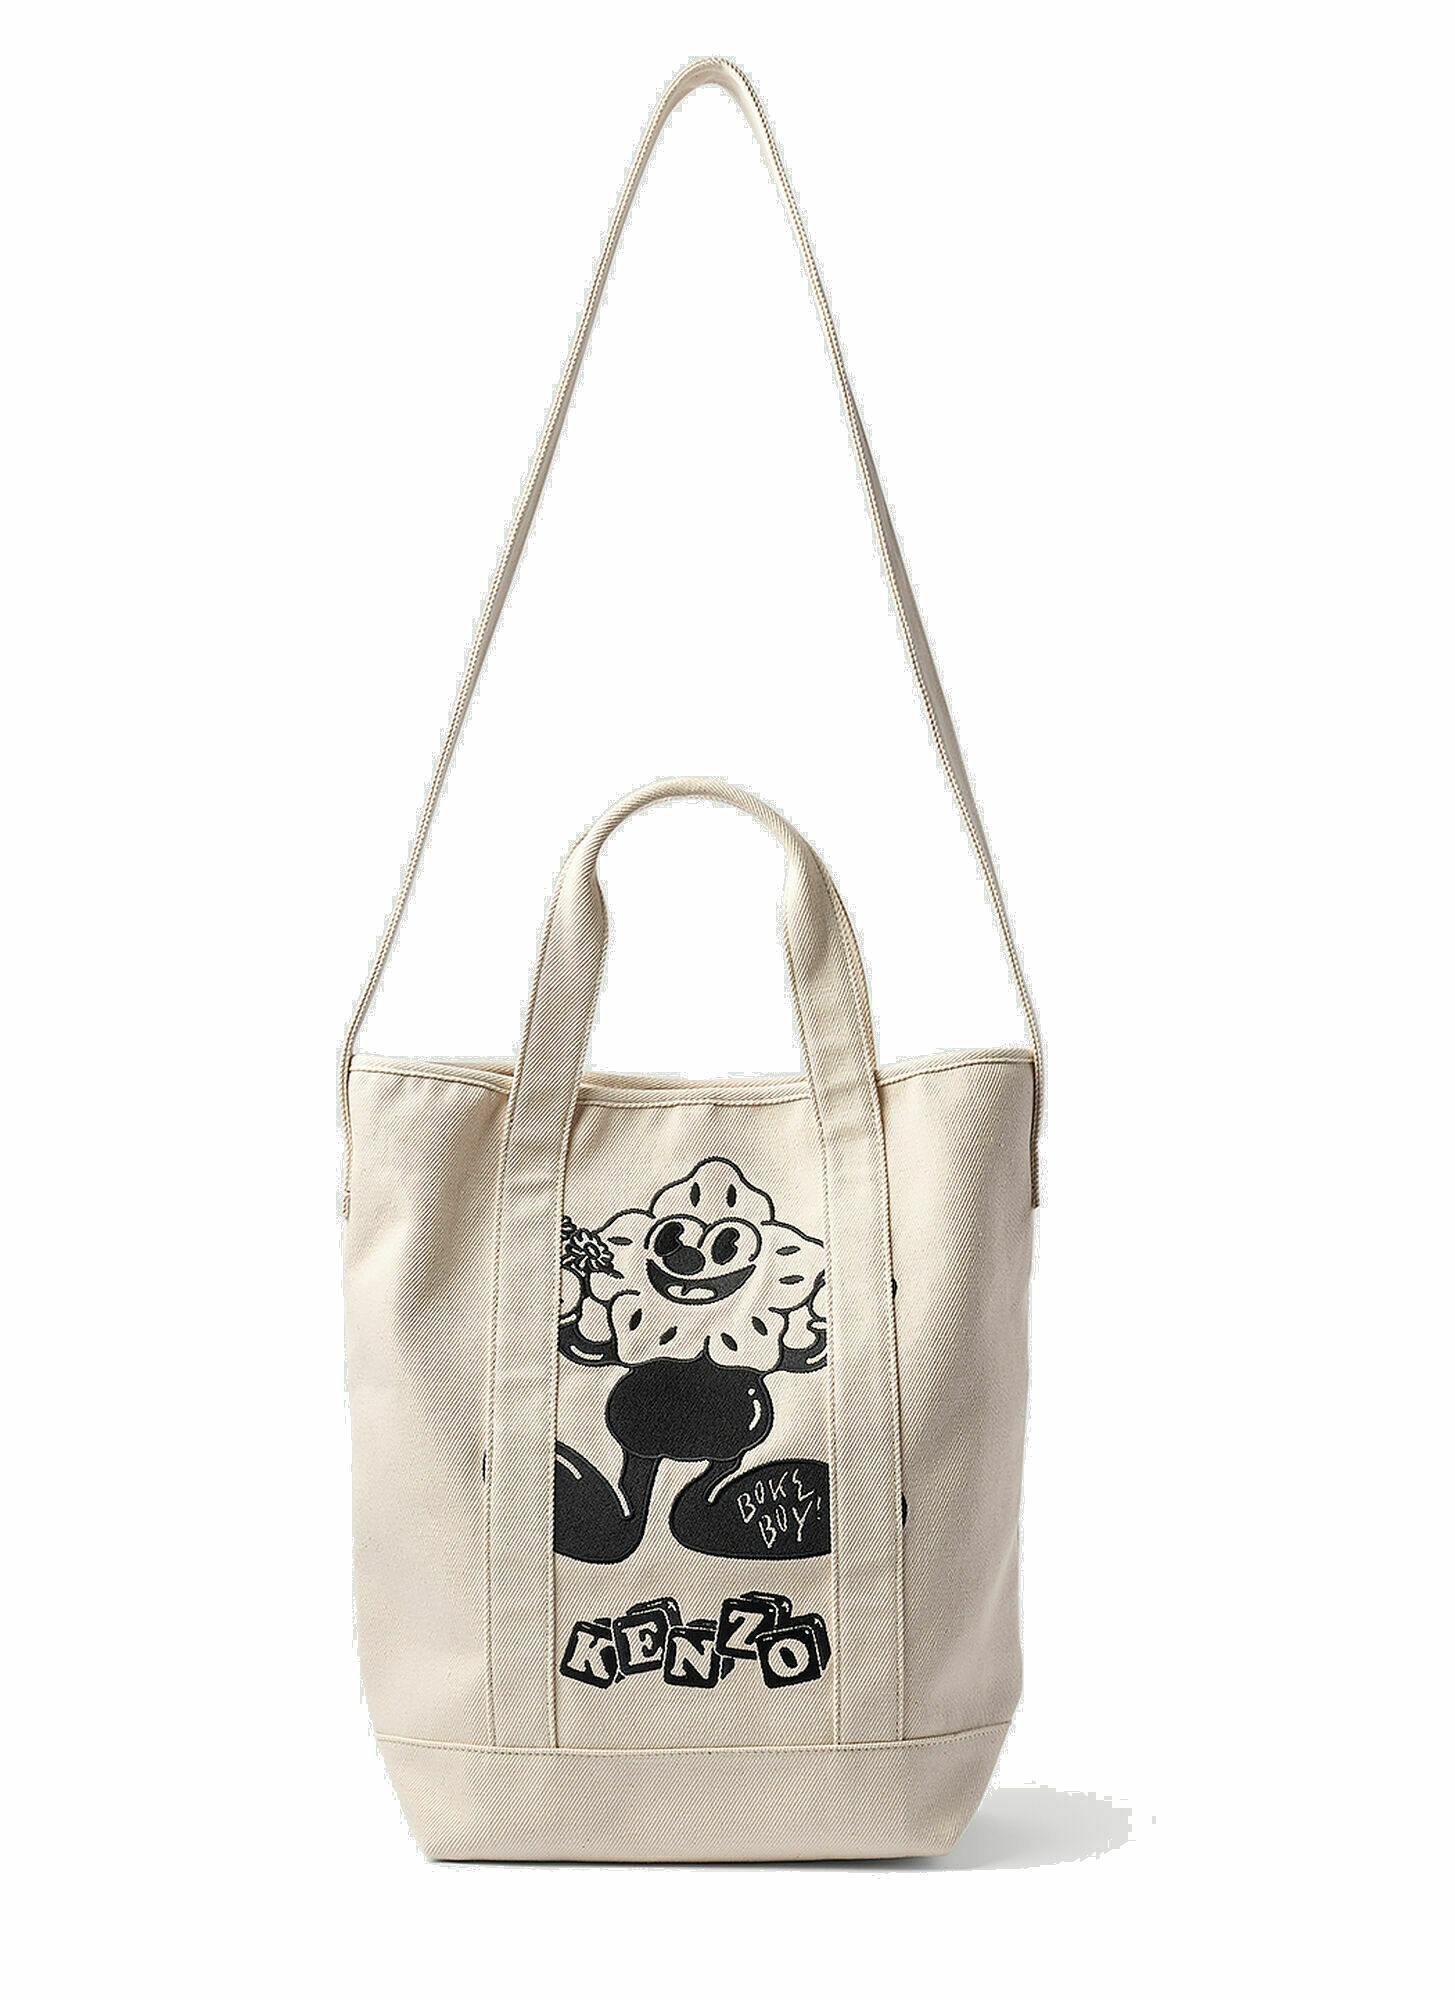 Photo: Kenzo - Boke Boy Tote Bag in Cream